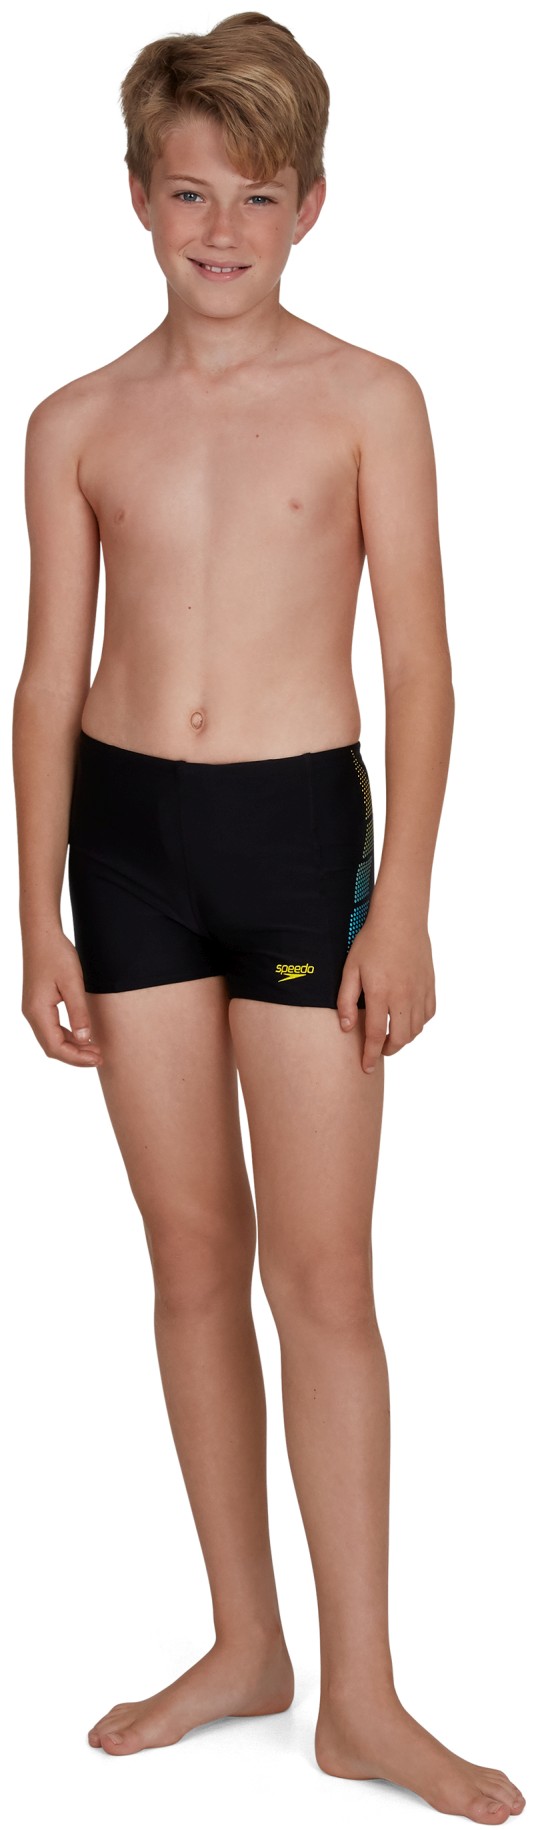 Boy’s swim shorts